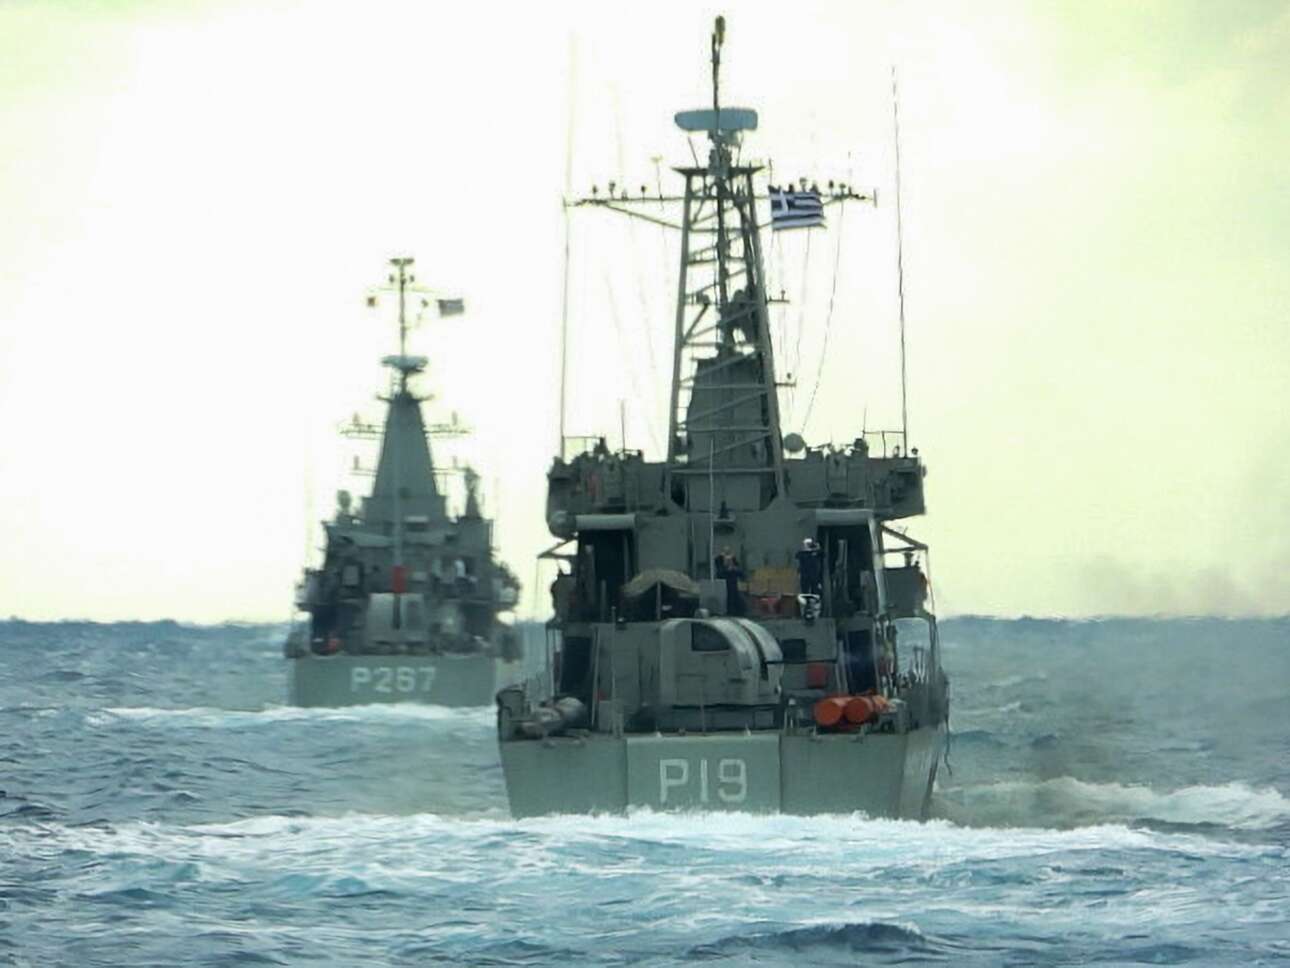 Μέγα το κράτος της θαλάσσης: να ένα από τα καρέ της εκπαιδευτικής άσκησης «Βροντή» του Πολεμικού Ναυτικού μας, η οποία έγινε στο Μυρτώο Πέλαγος και στον Σαρωνικό Κόλπο – εικονίζονται οι κανονιοφόροι «Νικηφόρος» (Ρ267) και «Ναυμάχος» (Ρ 19) επί το έργον